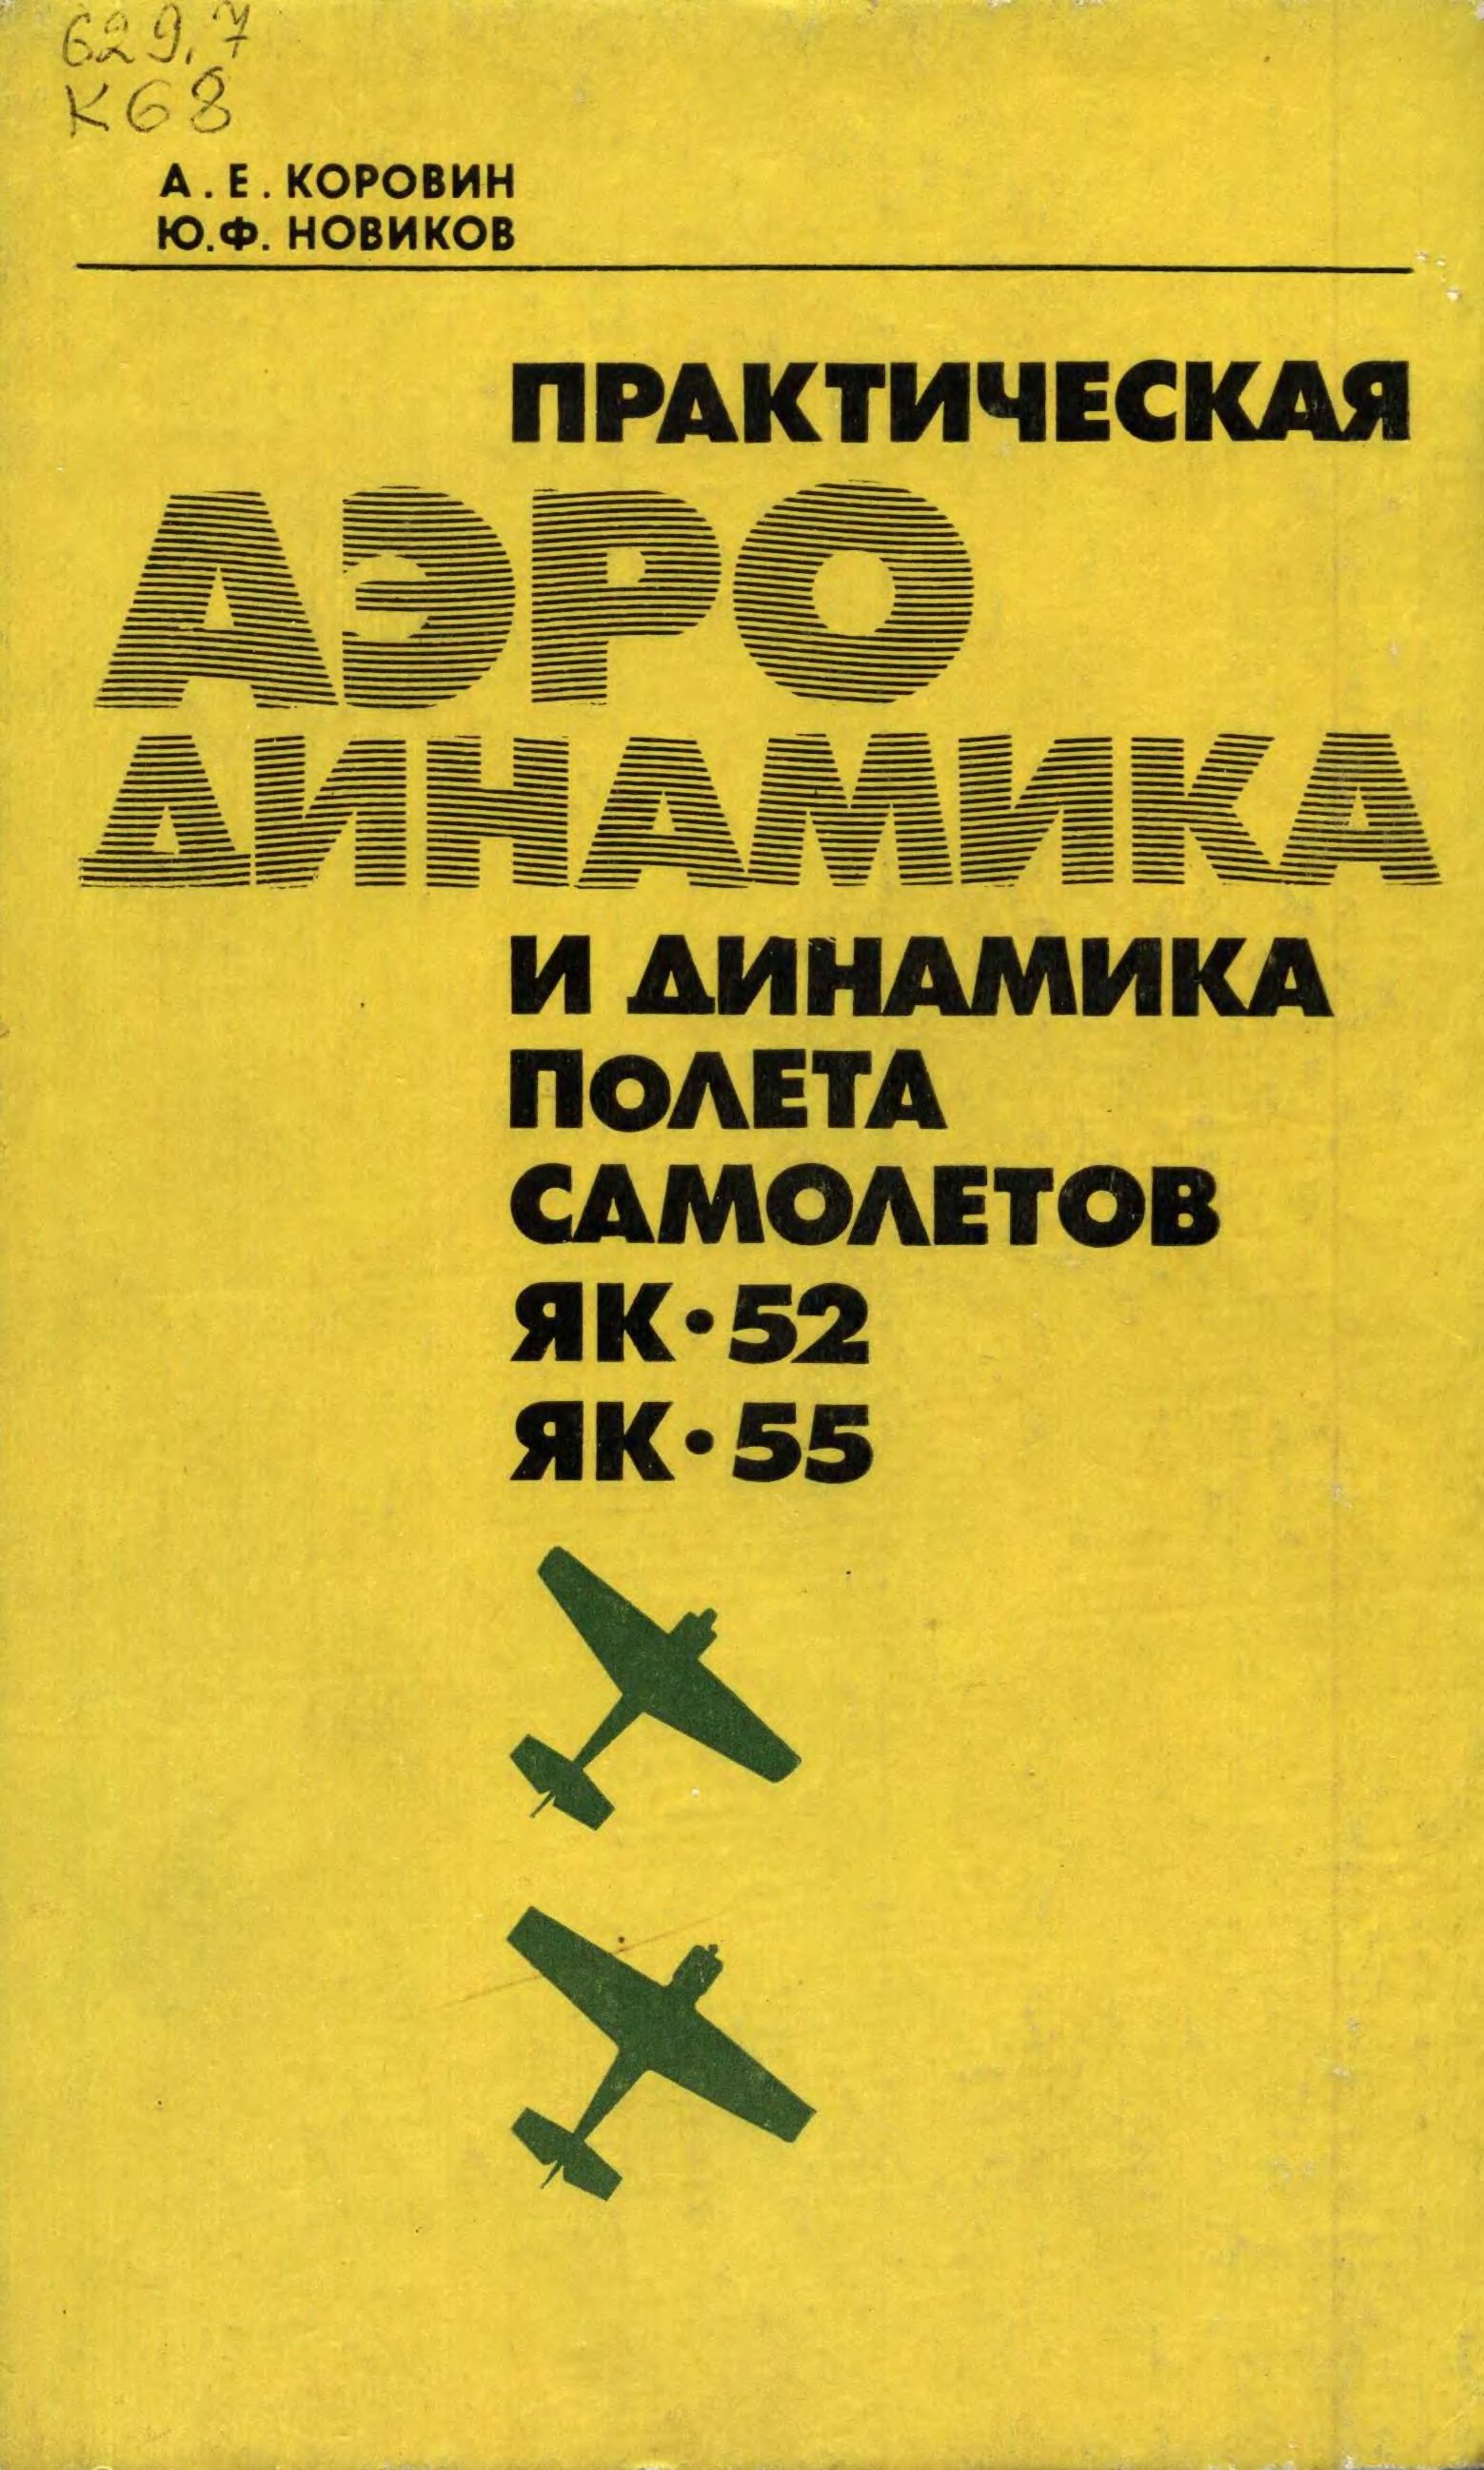 Обложка книги Практическая аэродинамика и динамика полета самолетов Як-52 и Як-55 (Коровин А. Е., Новиков Ю.Ф.)